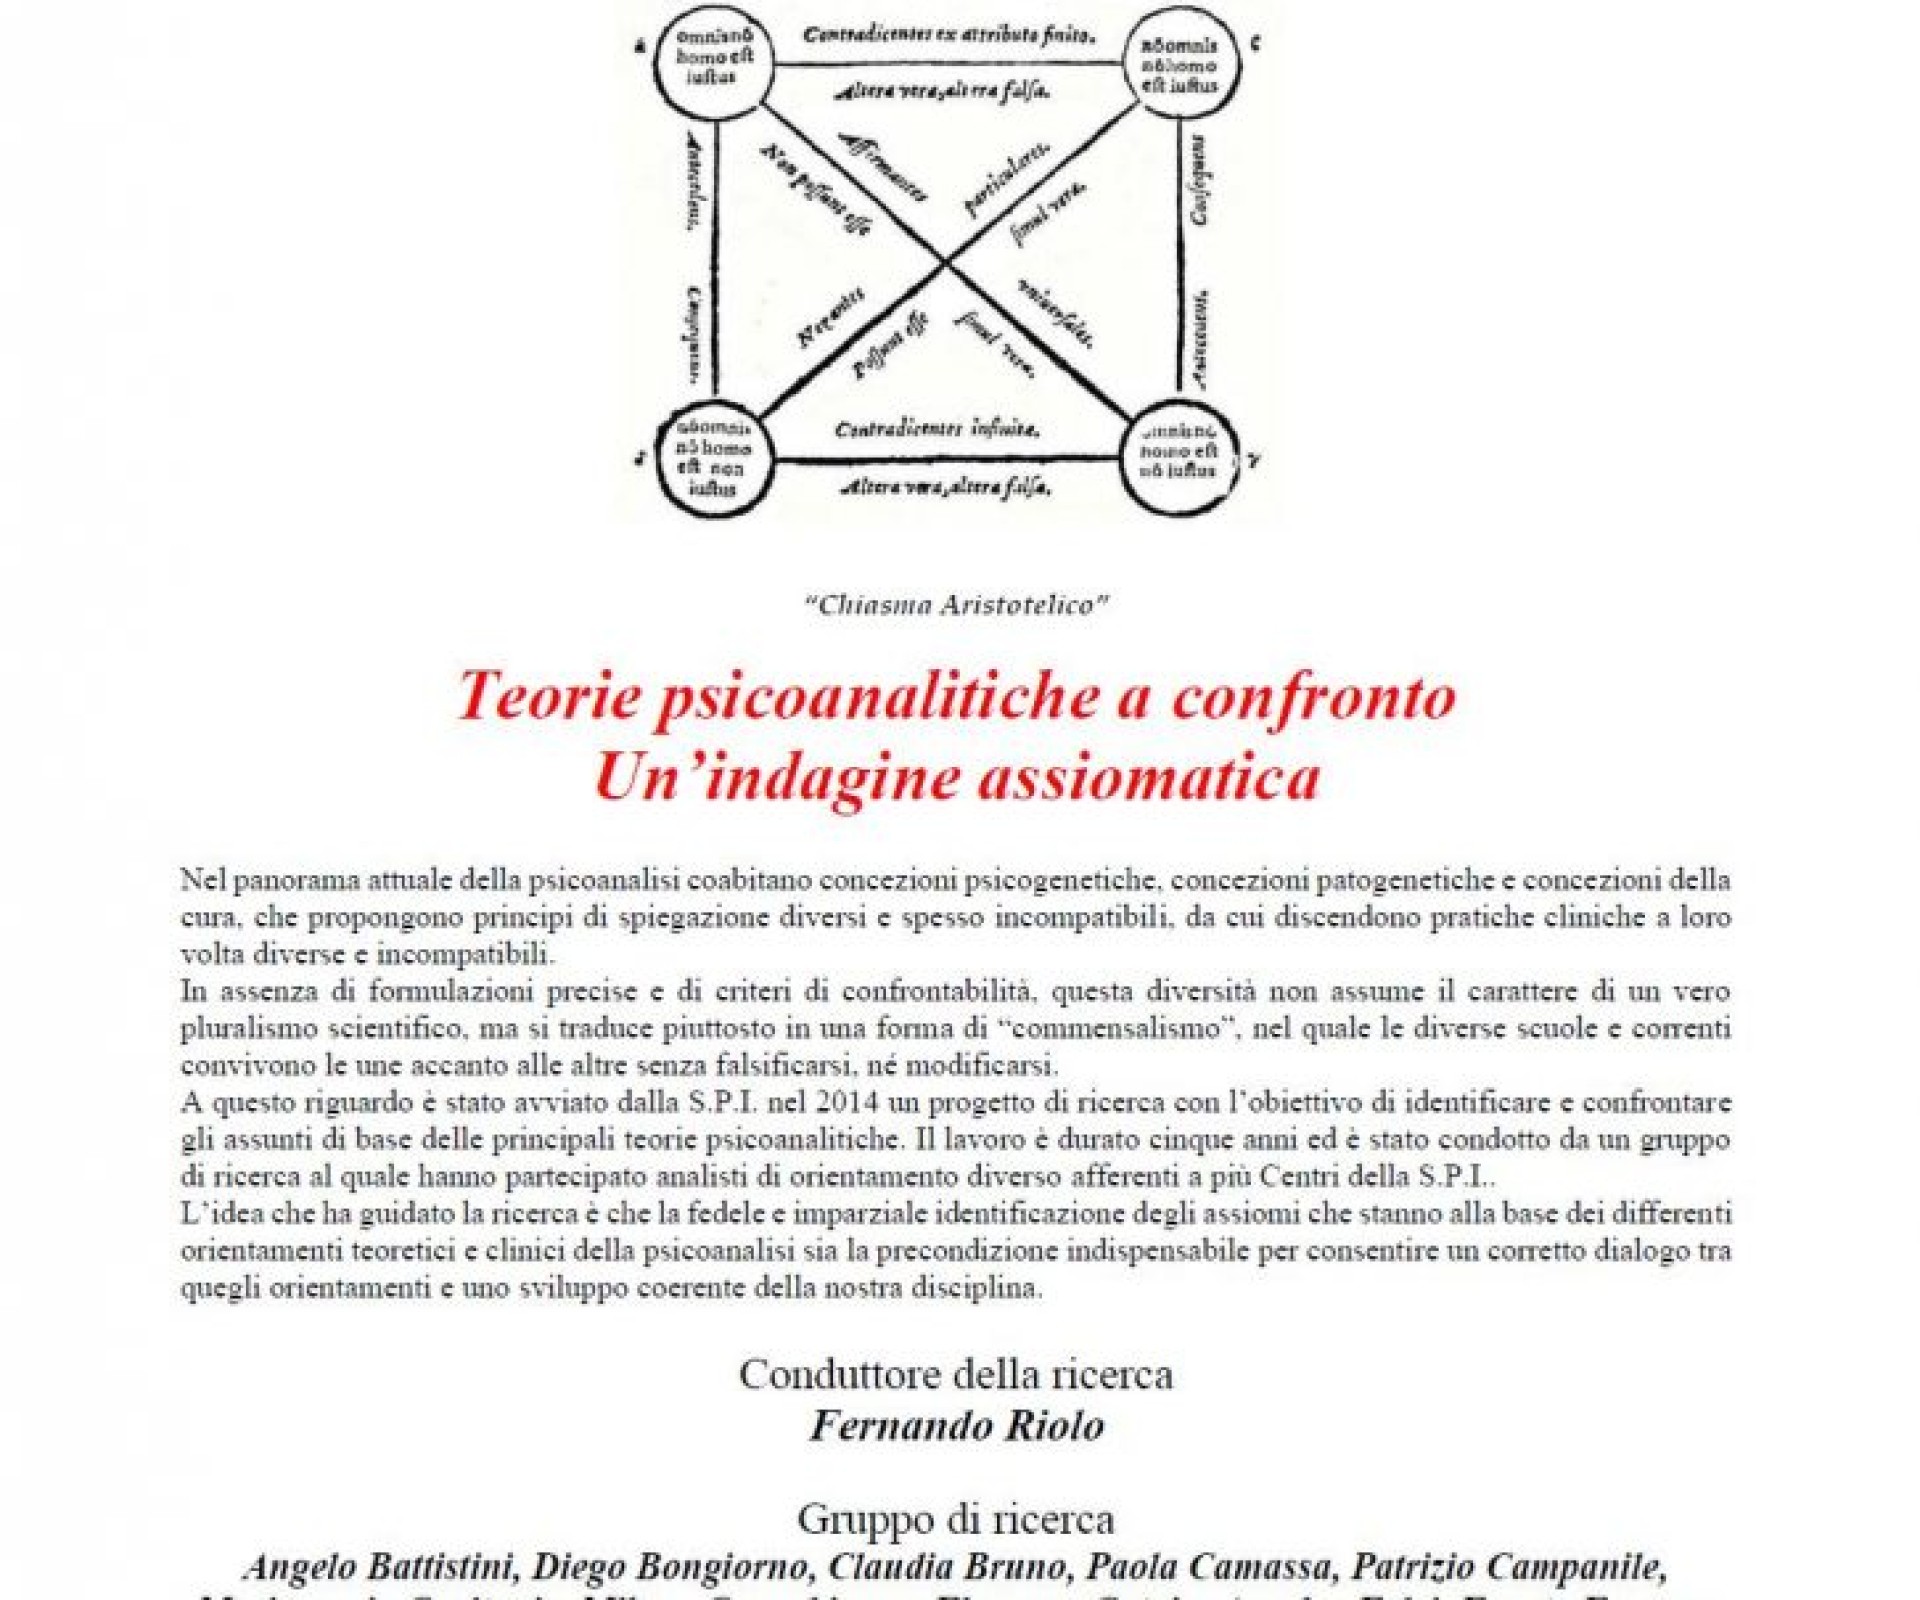 Giornata di studio Intercentri - Roma 7 dicembre 2019